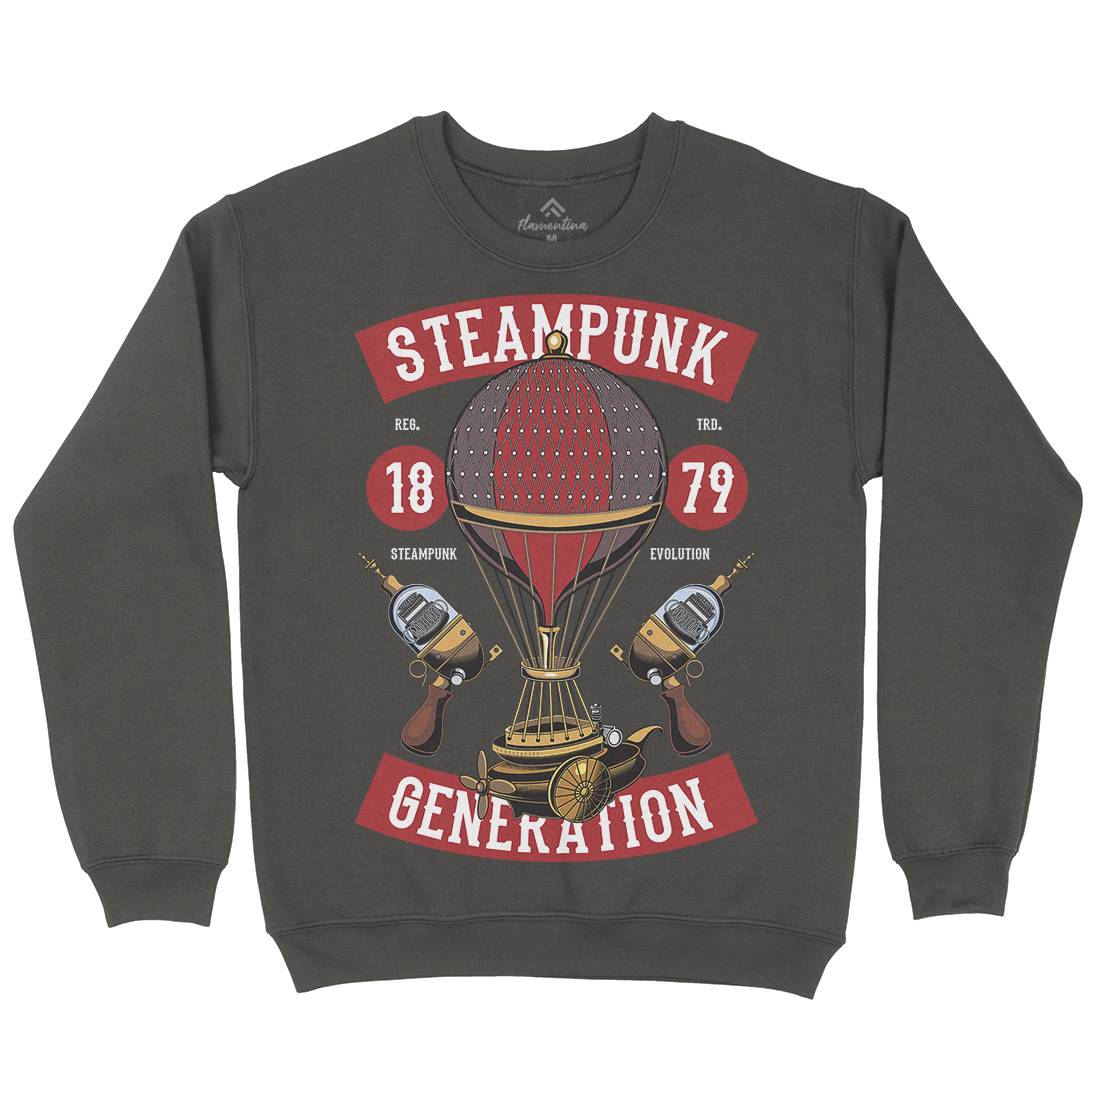 Generation Mens Crew Neck Sweatshirt Steampunk C449